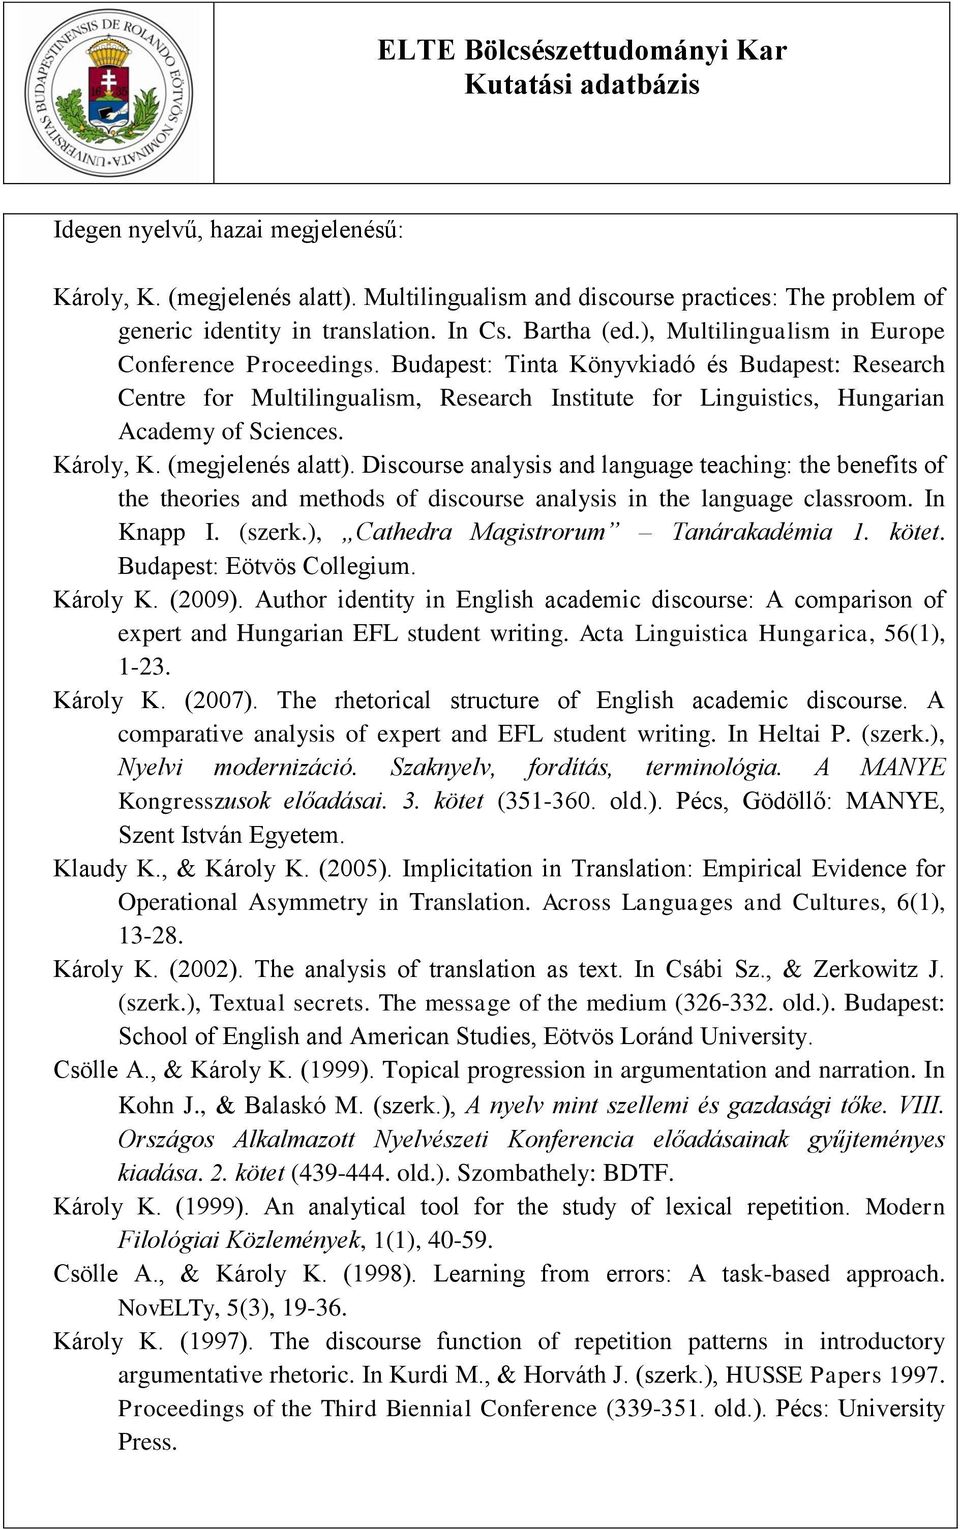 Károly, K. (megjelenés alatt). Discourse analysis and language teaching: the benefits of the theories and methods of discourse analysis in the language classroom. In Knapp I. (szerk.